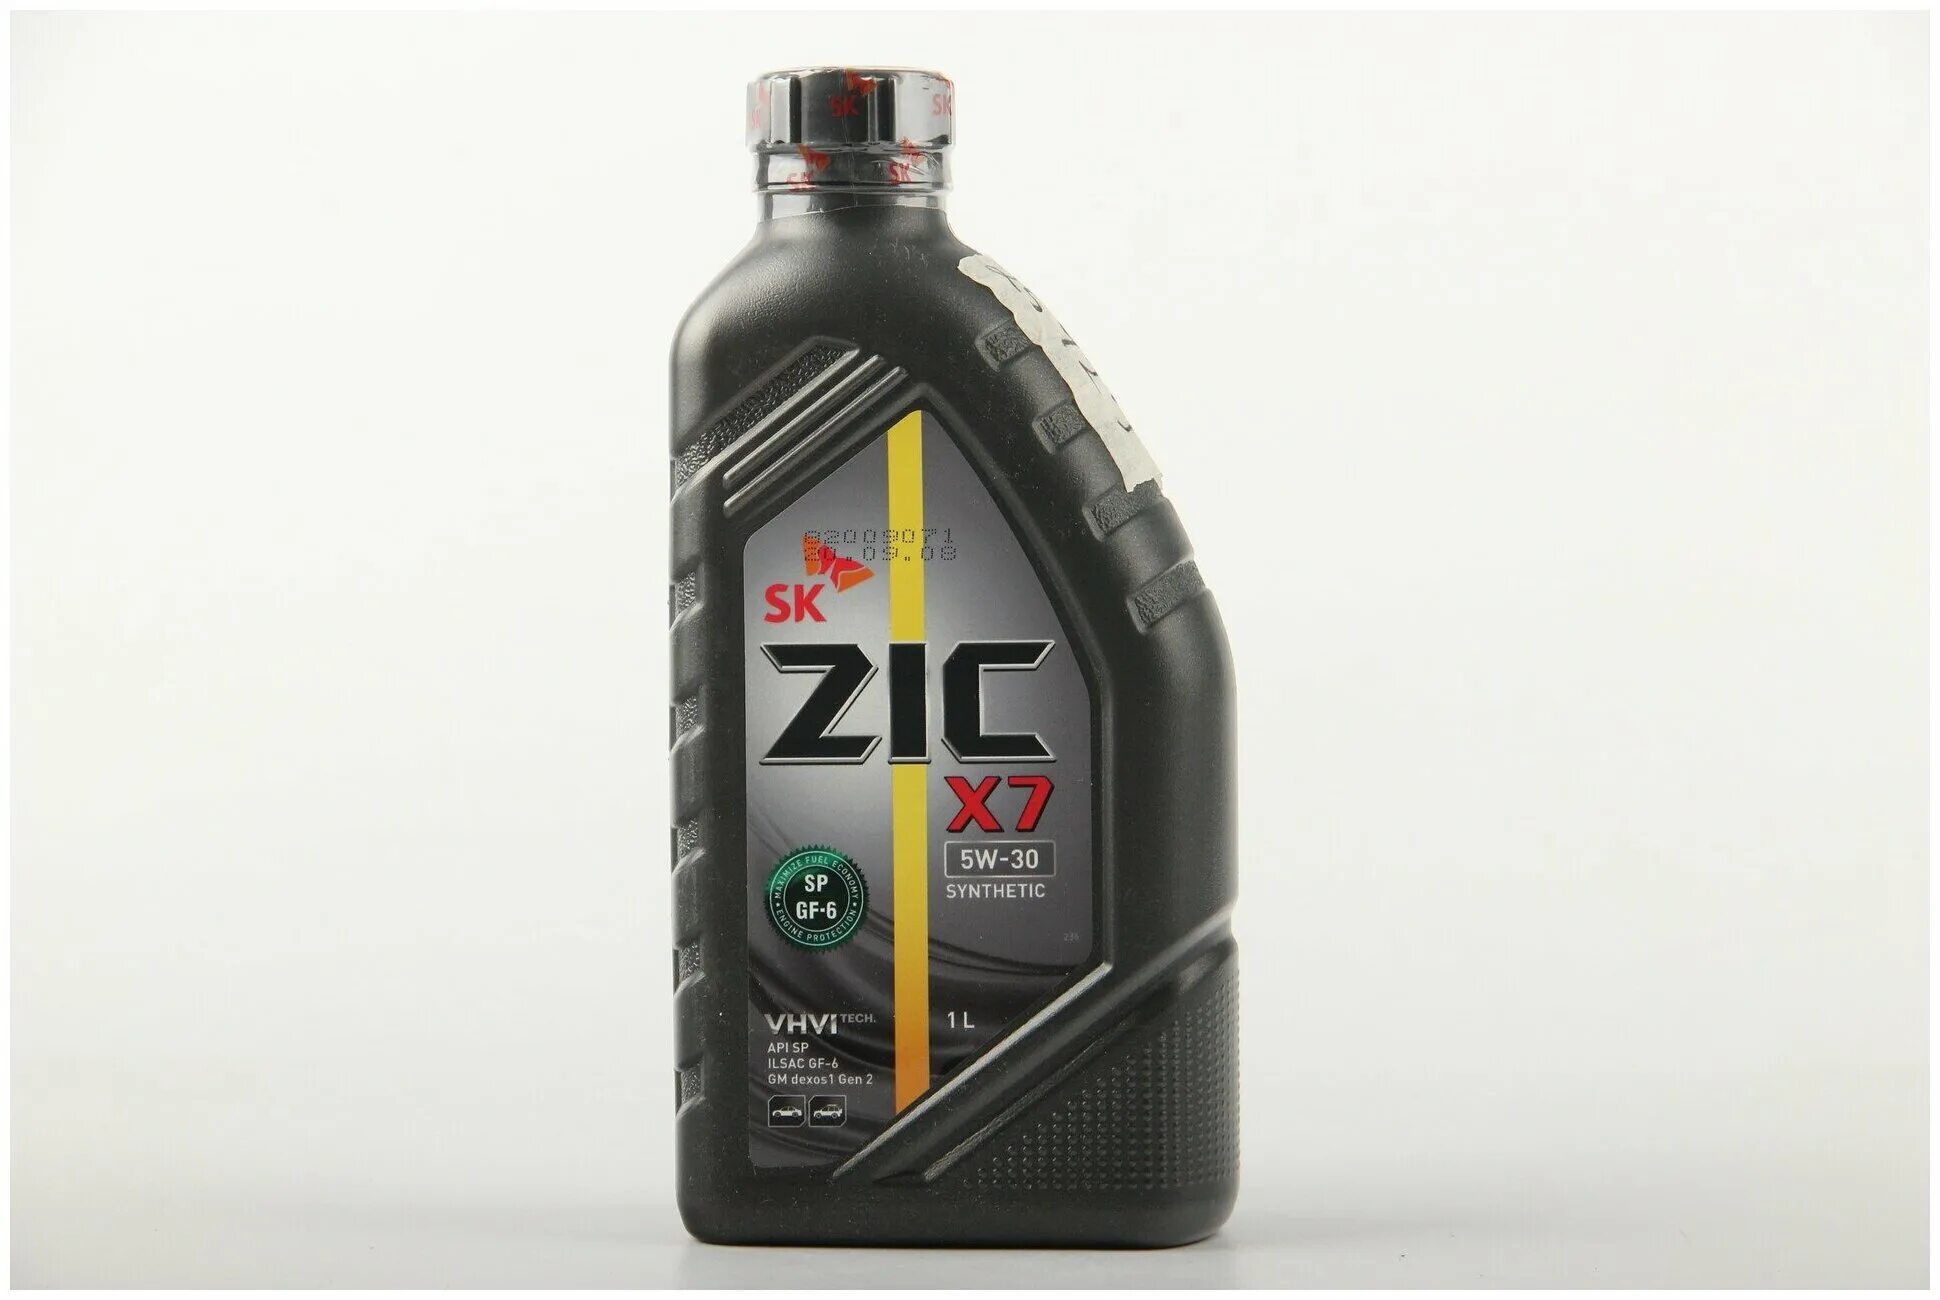 Zic x7 sp. ZIC x7 5w30 SP/gf-6. ZIC 10w 40 синтетика. Моторное масло ZIC x7. ZIC x7 10w-40 Synthetic.